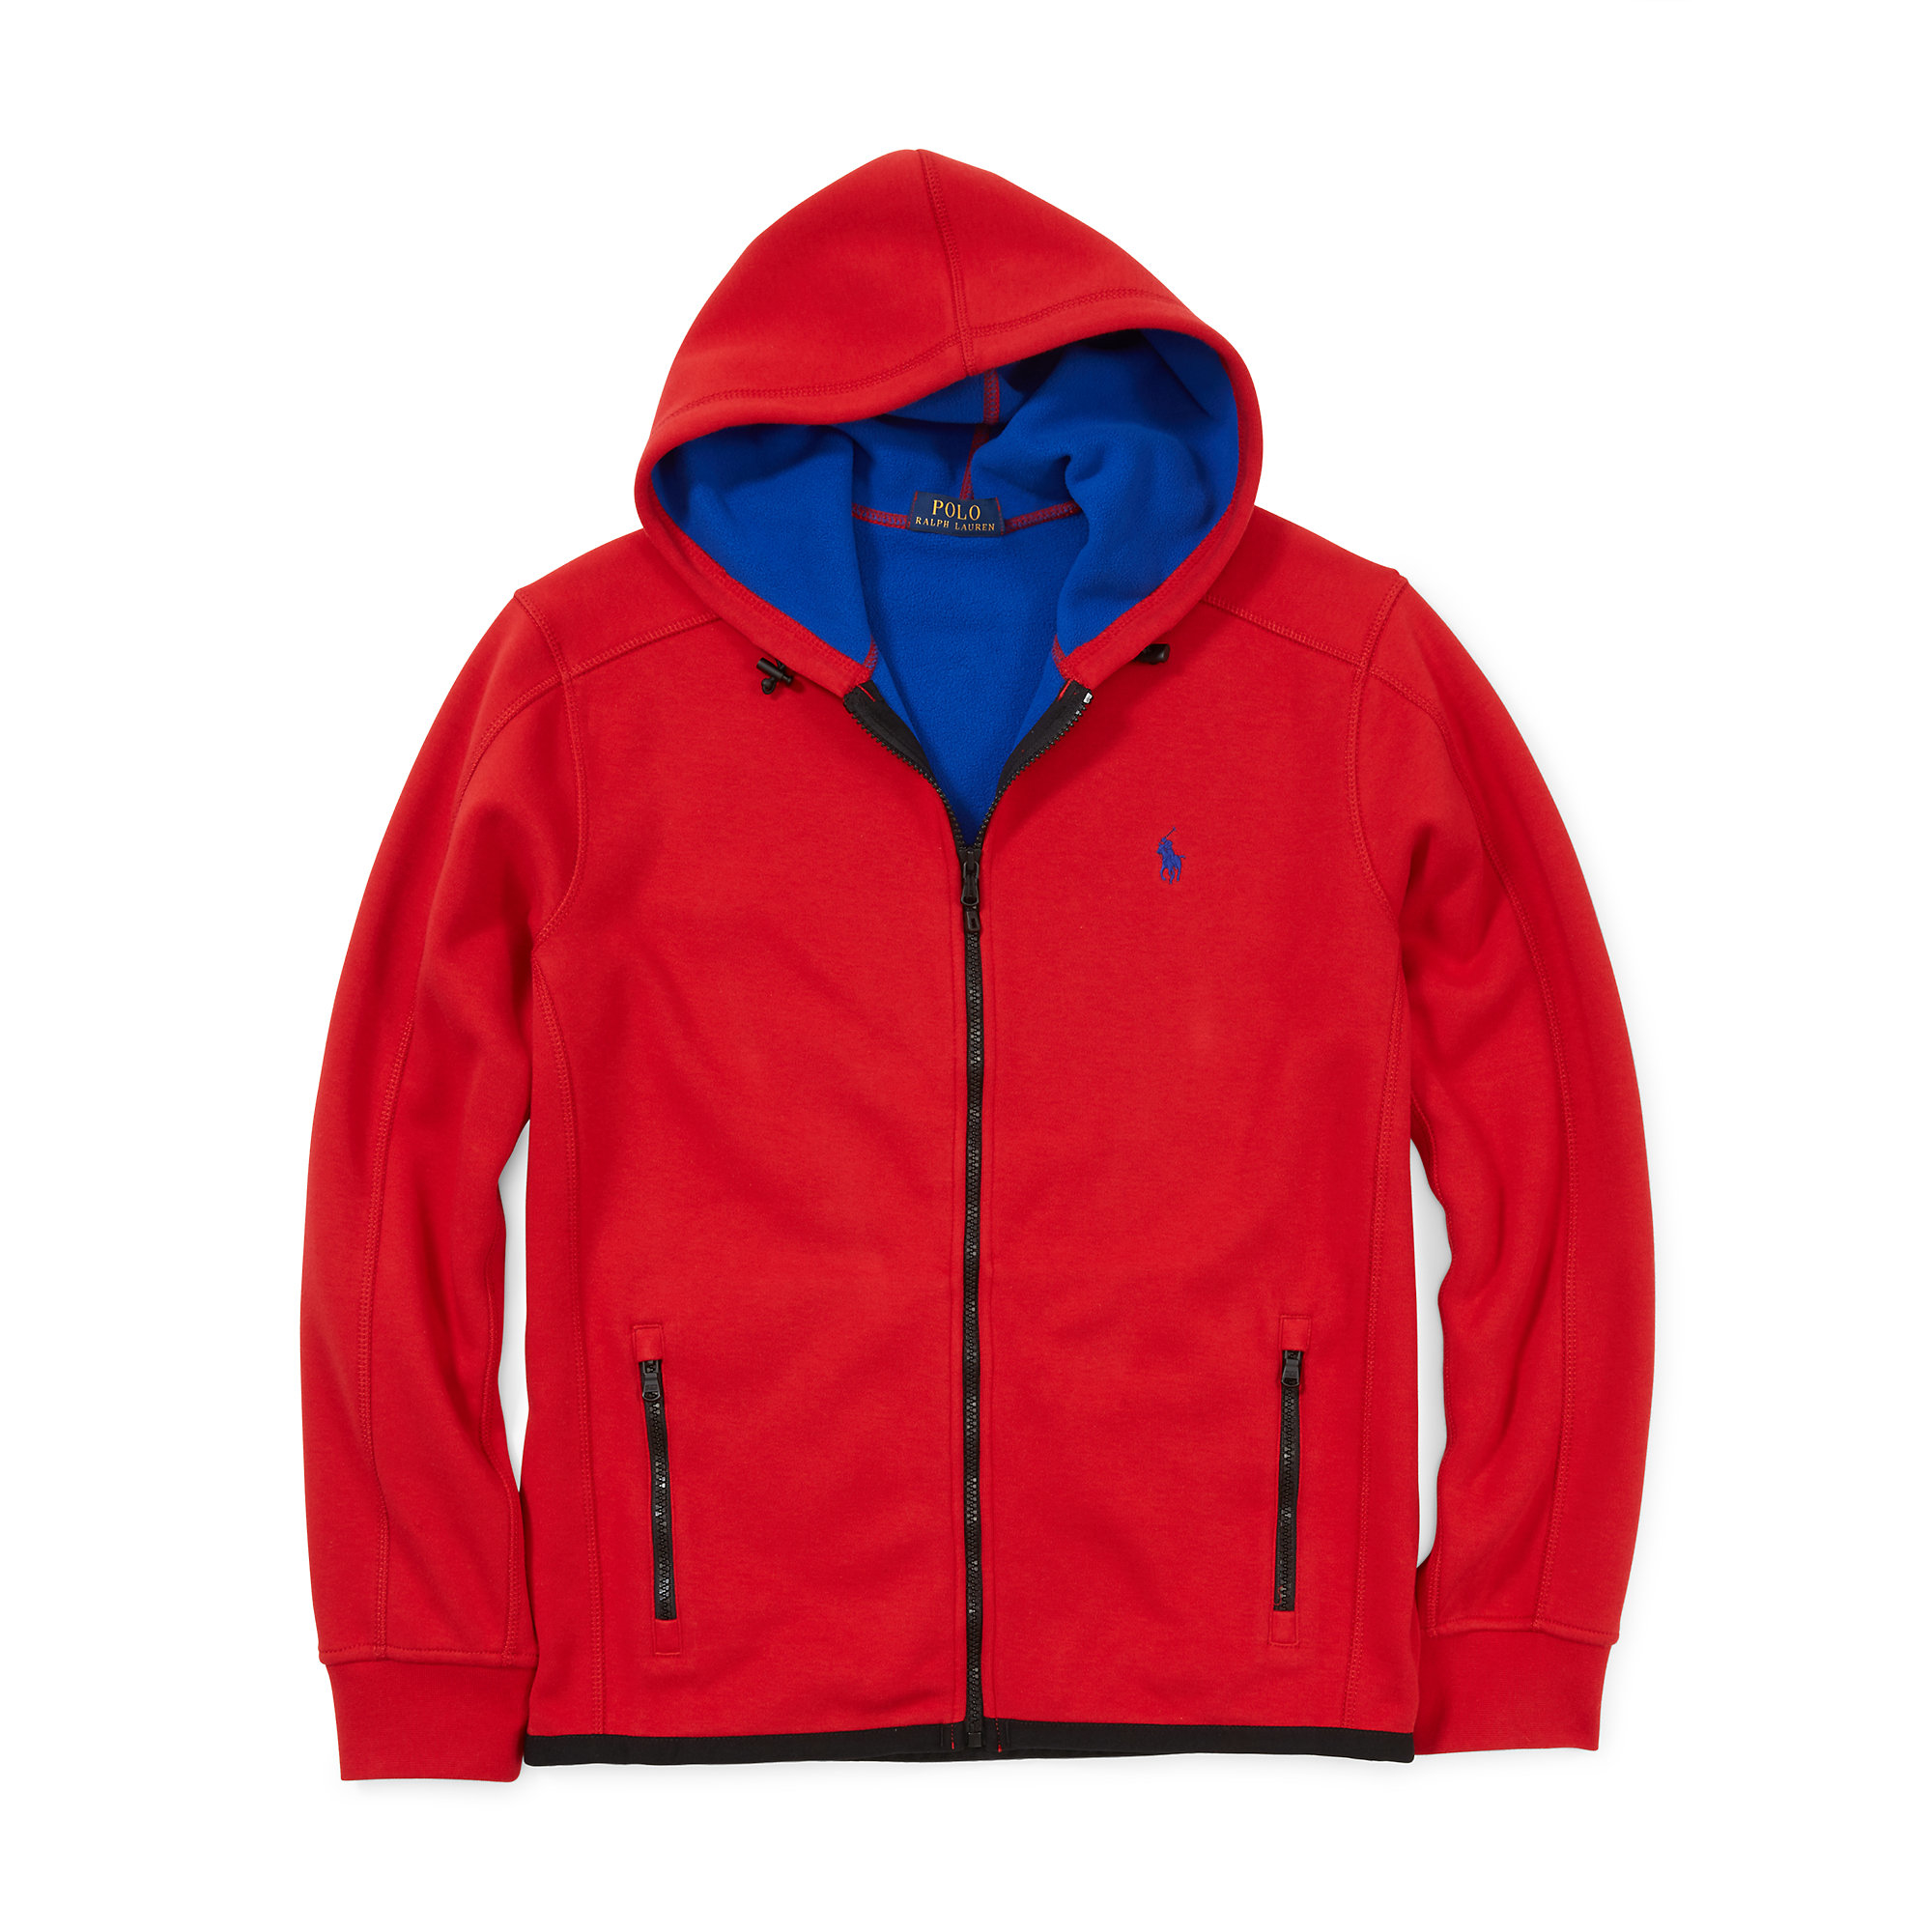 Lyst - Polo Ralph Lauren Bonded-fleece Jacket in Red for Men